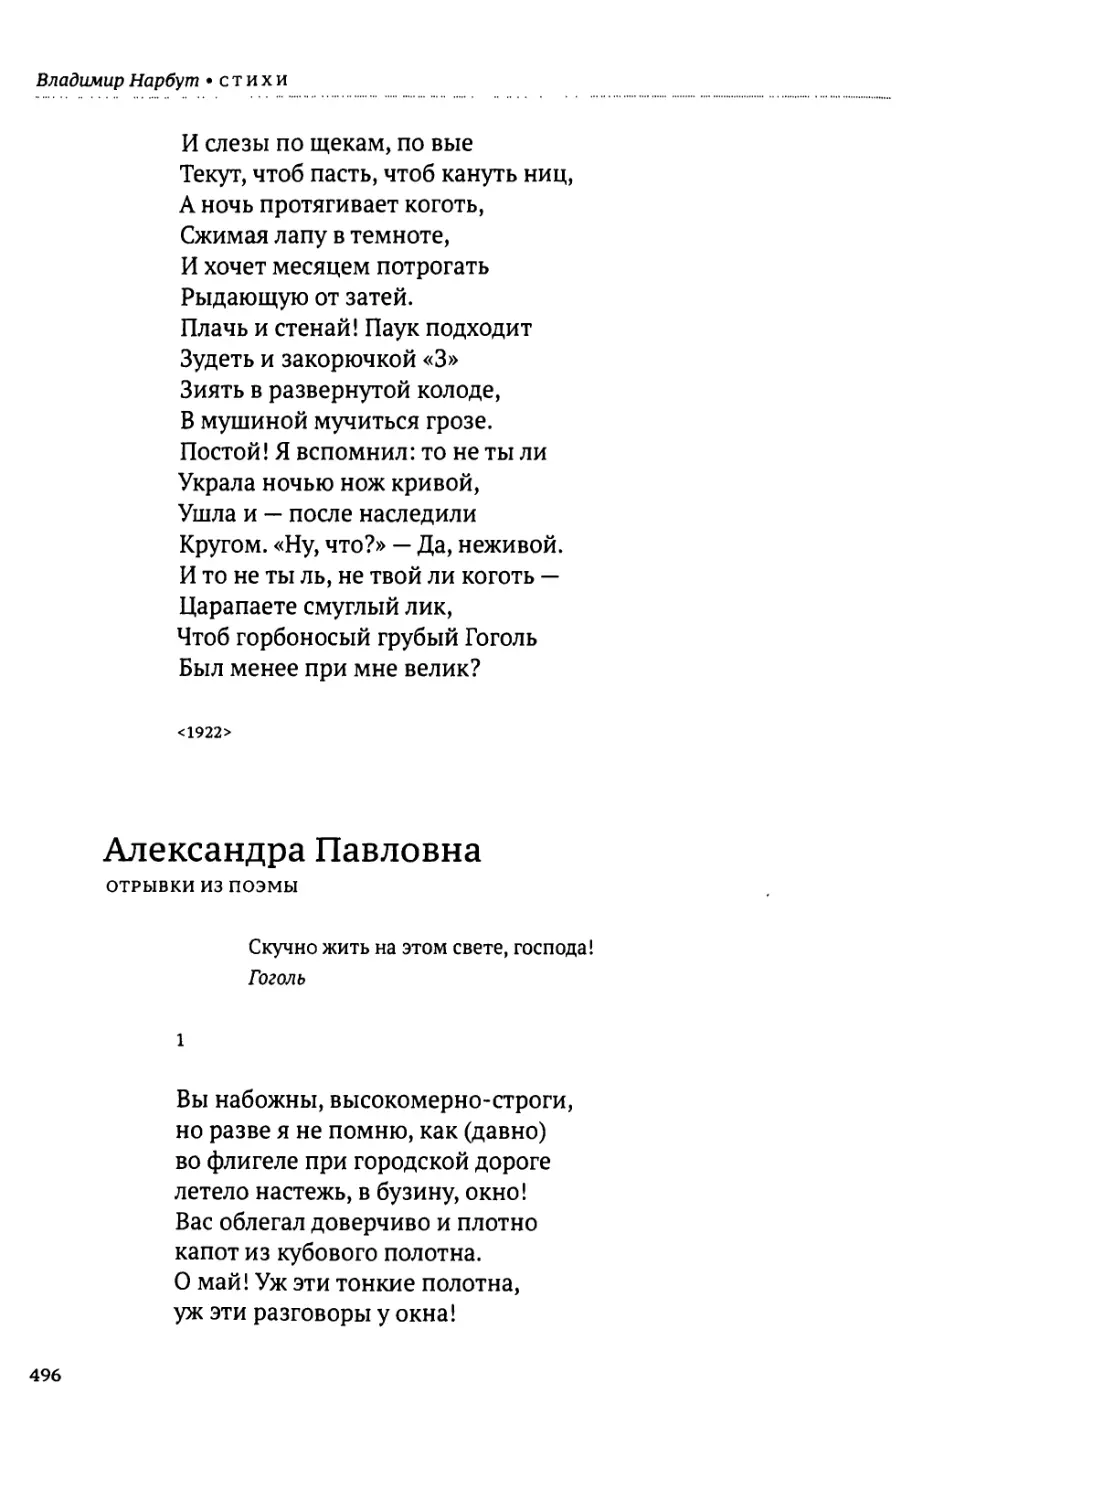 Александра Павловна. Отрывки из поэмы